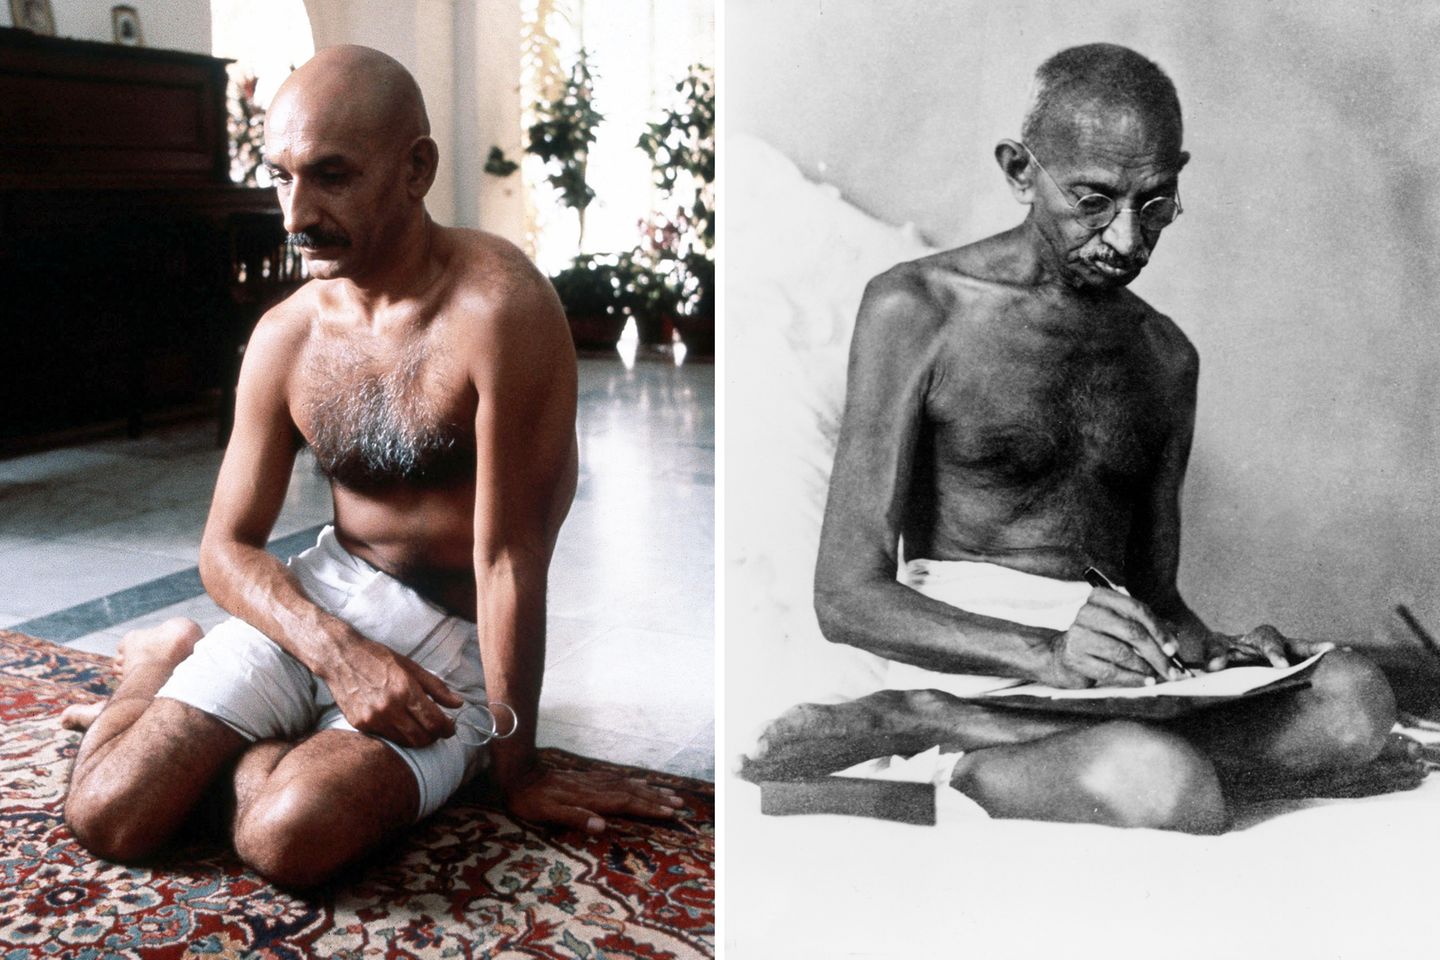 Der Film "Gandhi" ist ein britisch-indischer Spielfilm von 1982. Er erzählt die Lebensgeschichte des indischen Unabhängigkeitskämpfers Mahatma Gandhi. Für die Filmbiografie wird Ben Kingsley als Schauspieler ausgewählt, zur Diskussion stand im Vorfeld unter anderem auch Anthony Hopkins.